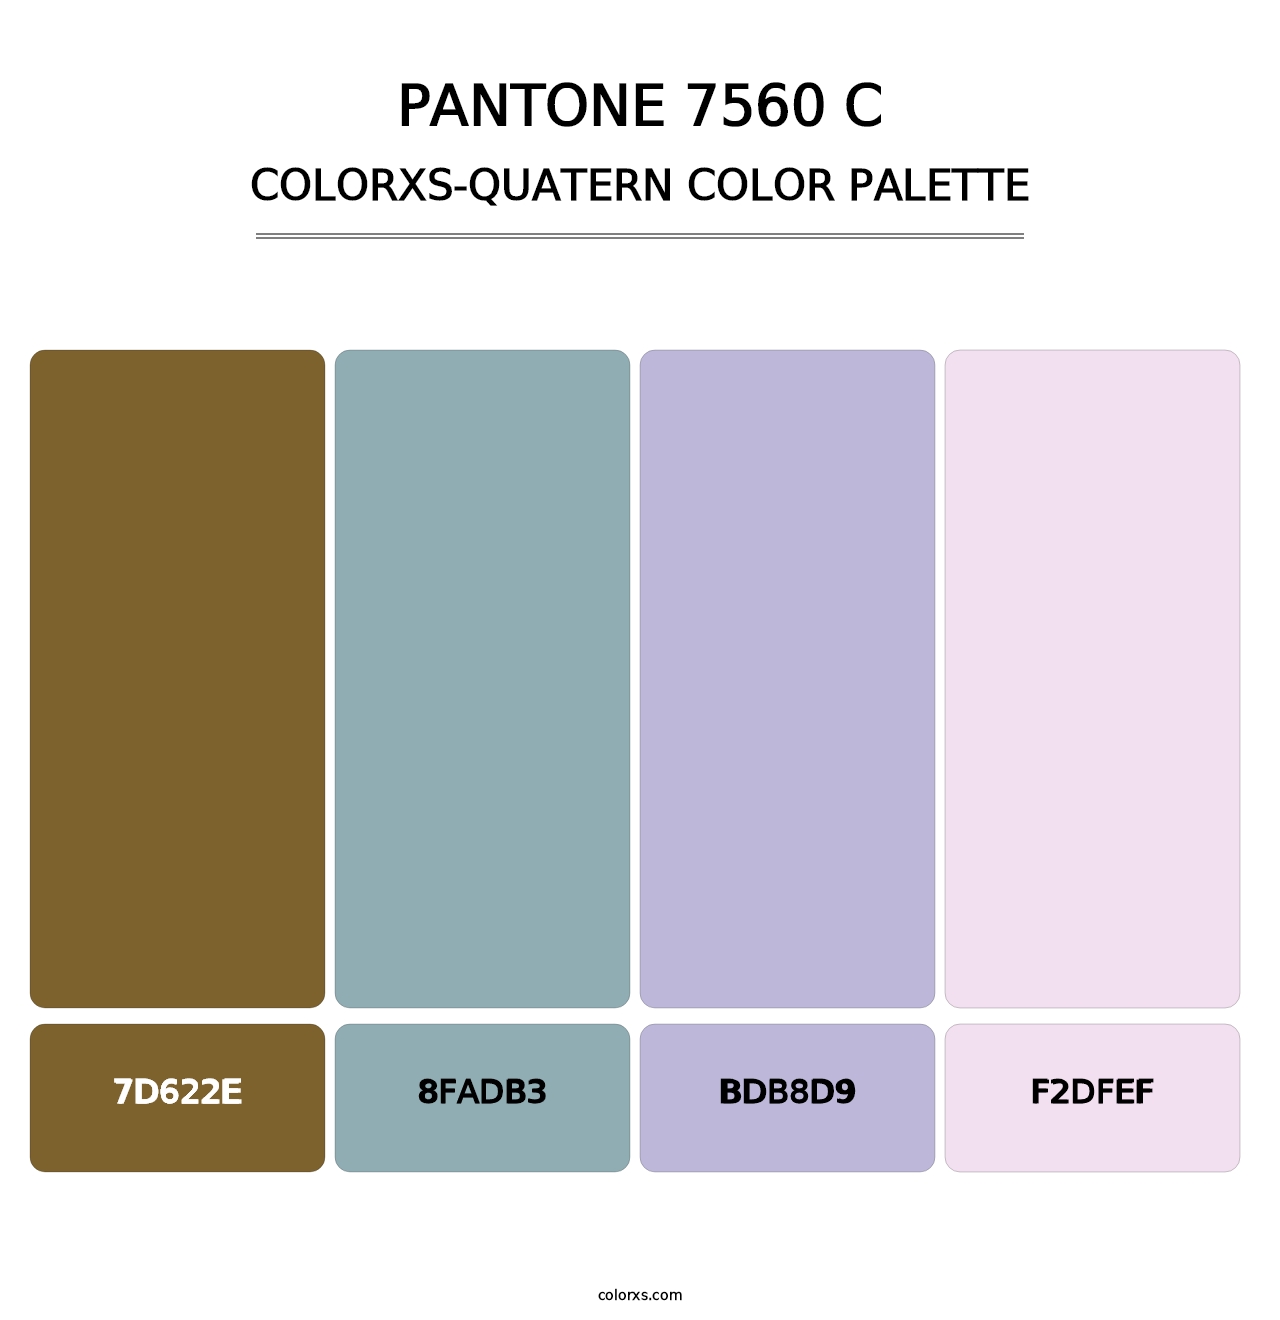 PANTONE 7560 C - Colorxs Quatern Palette